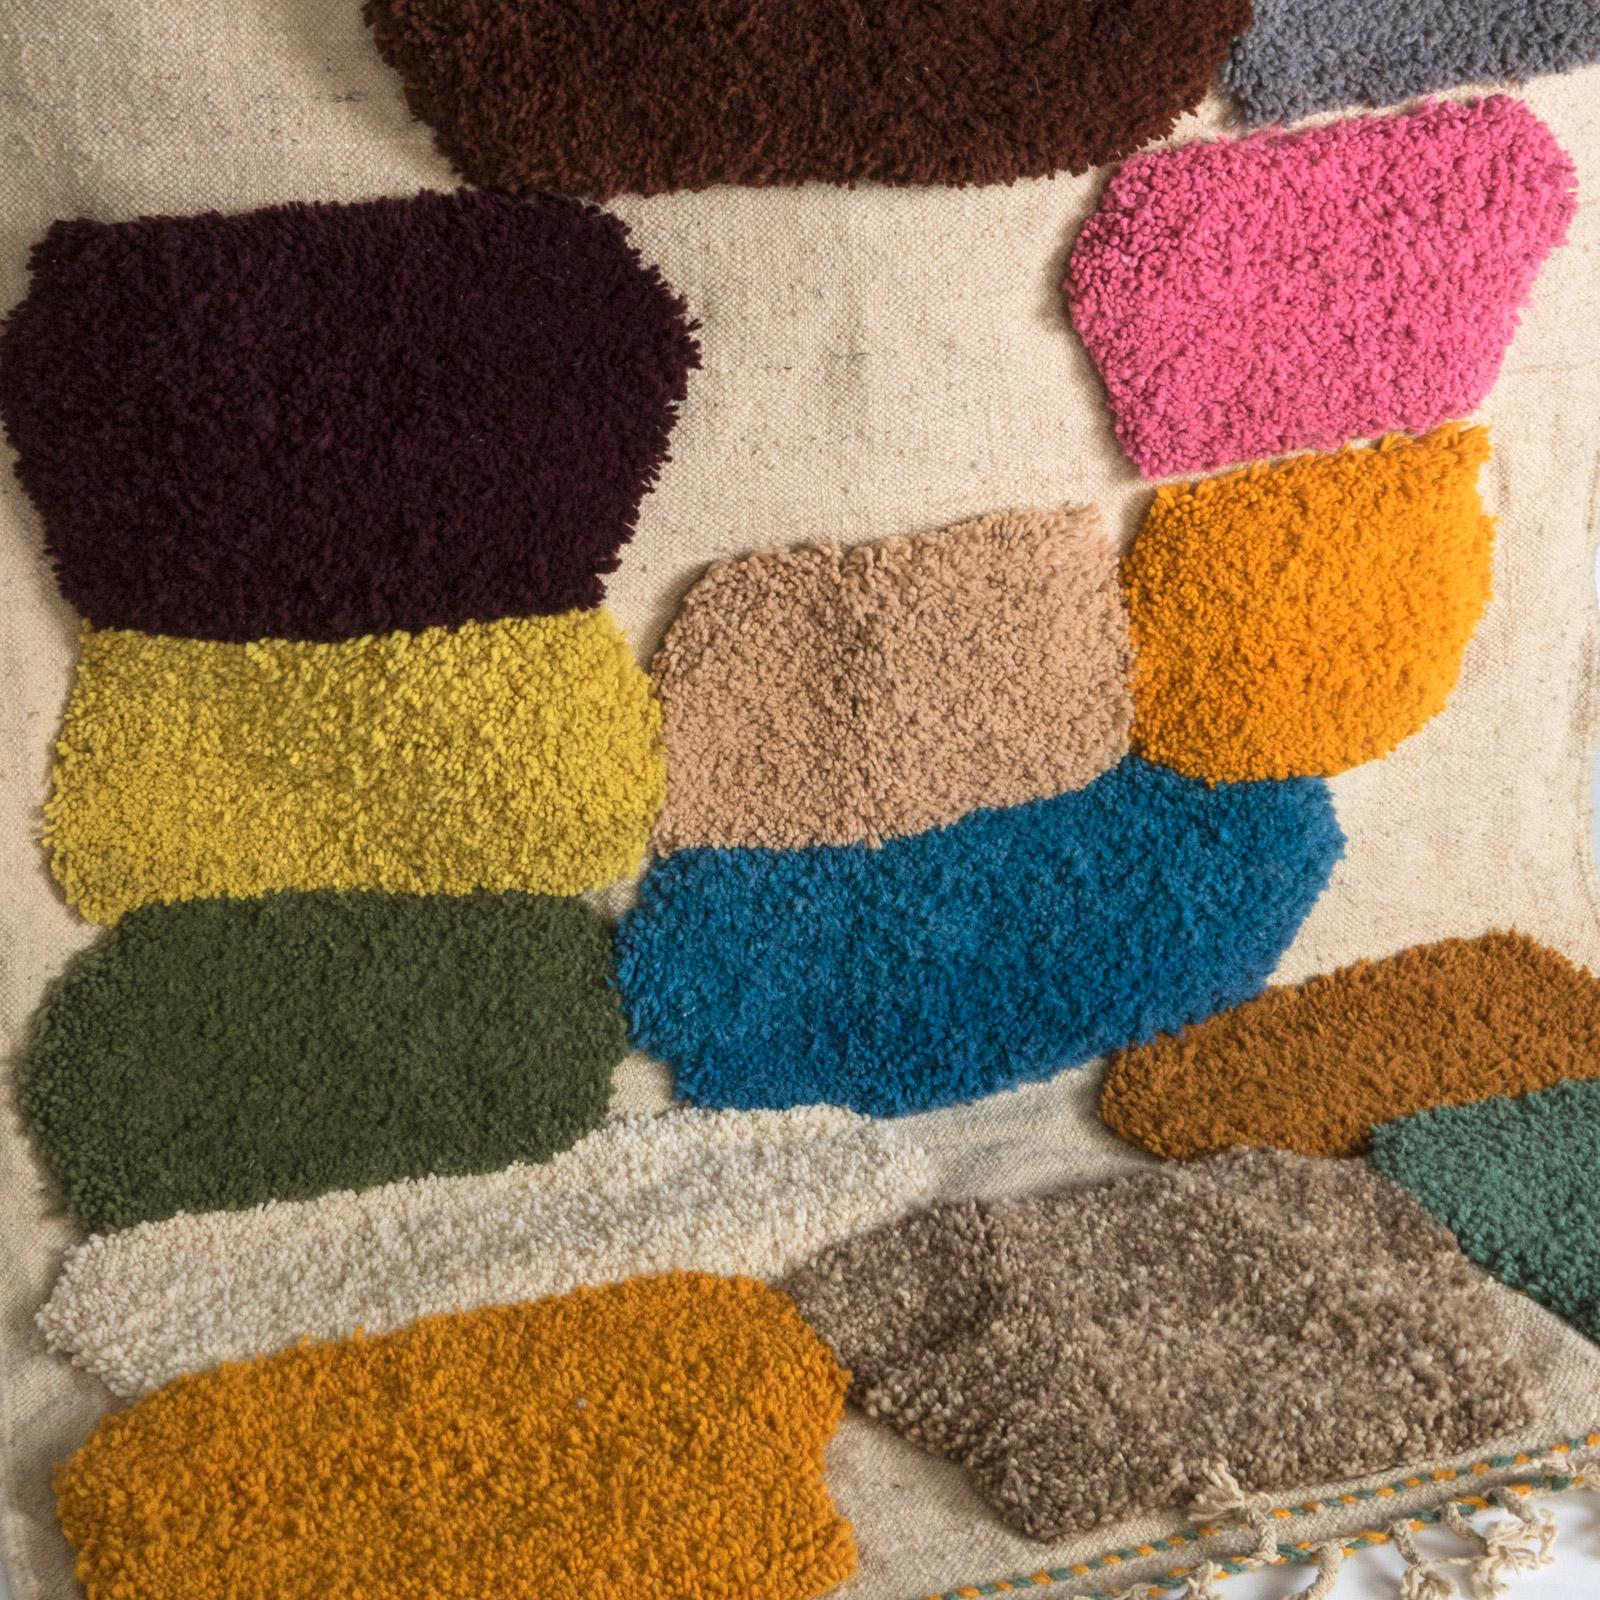 Transformez votre espace de vie avec le charme distinctif de ce tapis marocain vintage des années 1970. Polyvalent dans son design, ce tapis peut être élégamment exposé sur le sol ou accroché comme un chef-d'œuvre artistique sur votre mur.

Ce